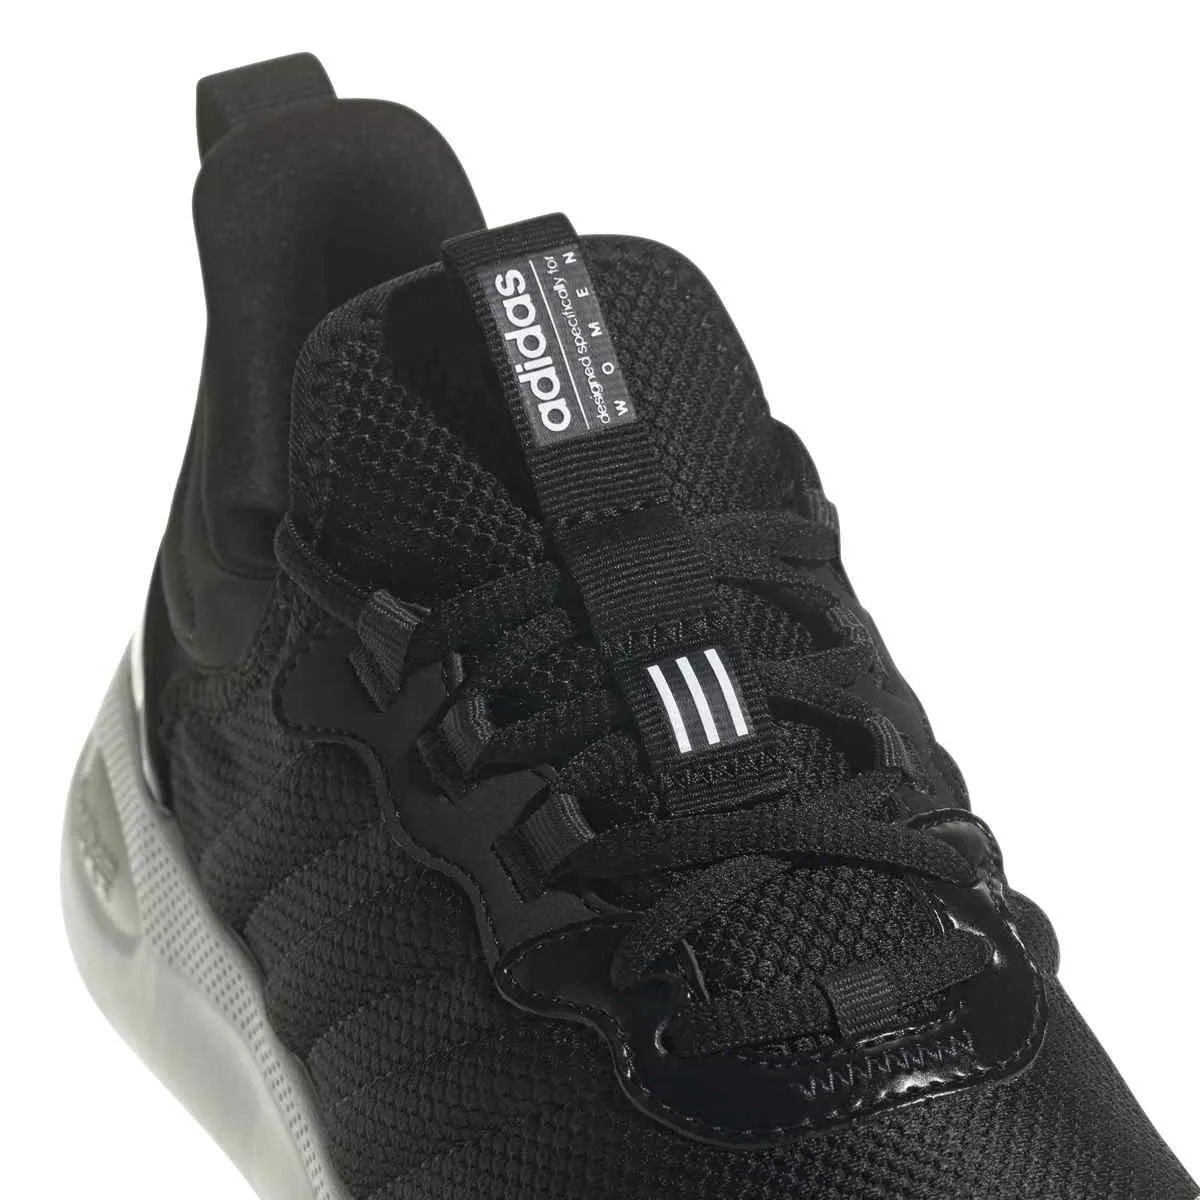 Zapatillas deportivas adidas Purecomfort negras/blancas